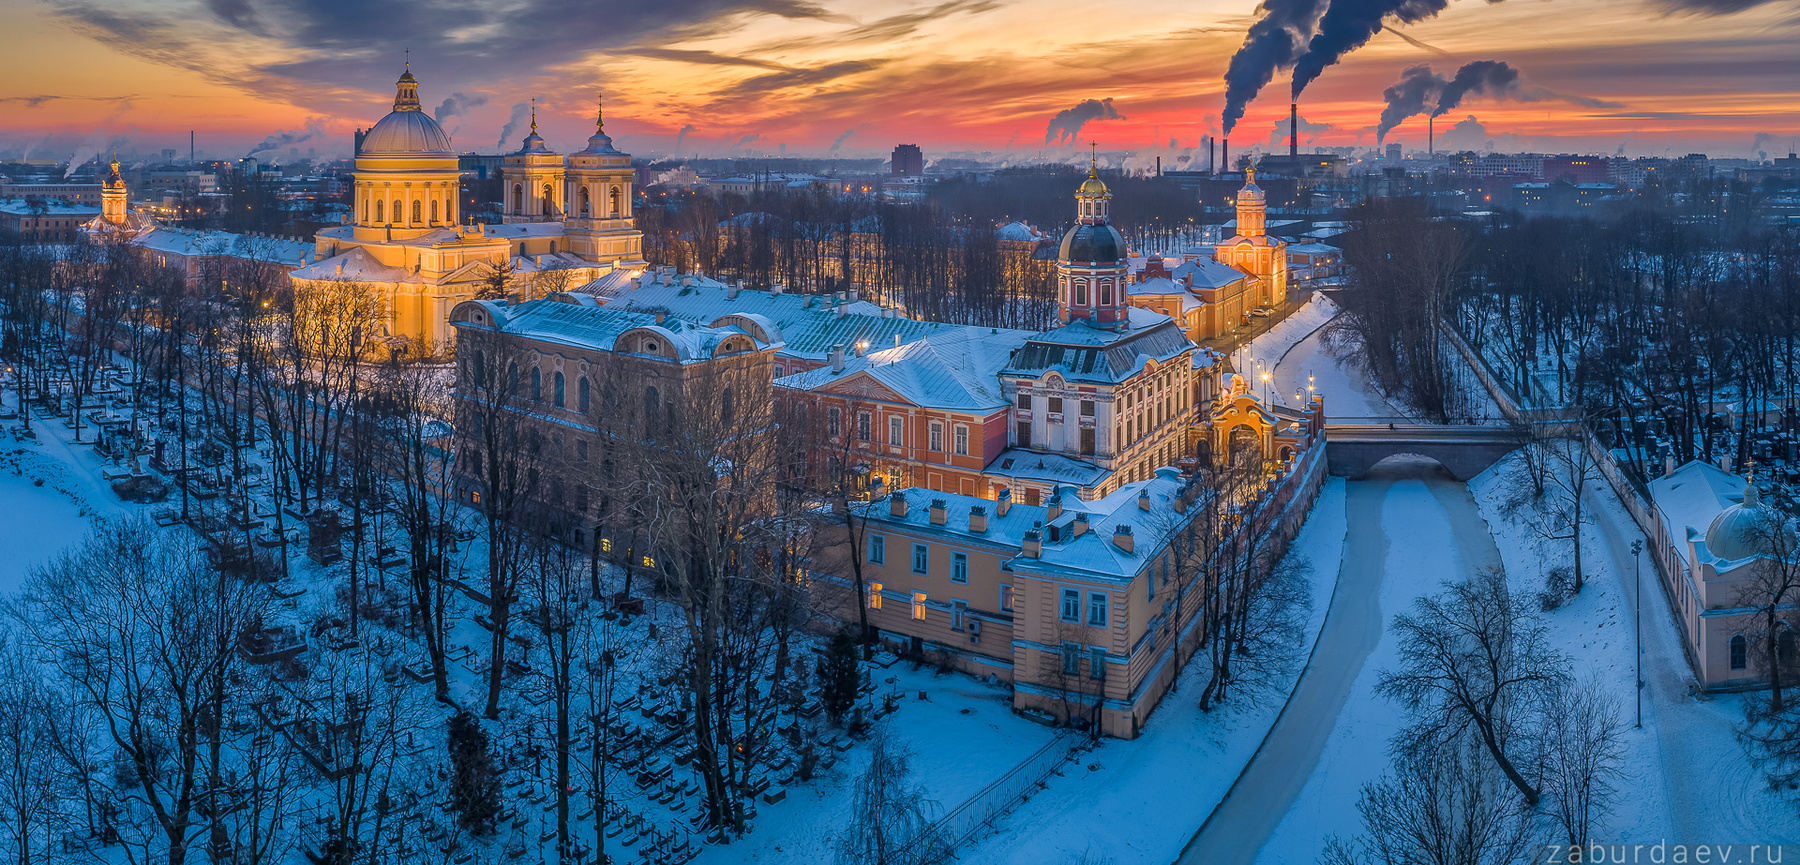 Александро-Невская лавра россия петербург зима вечер закат